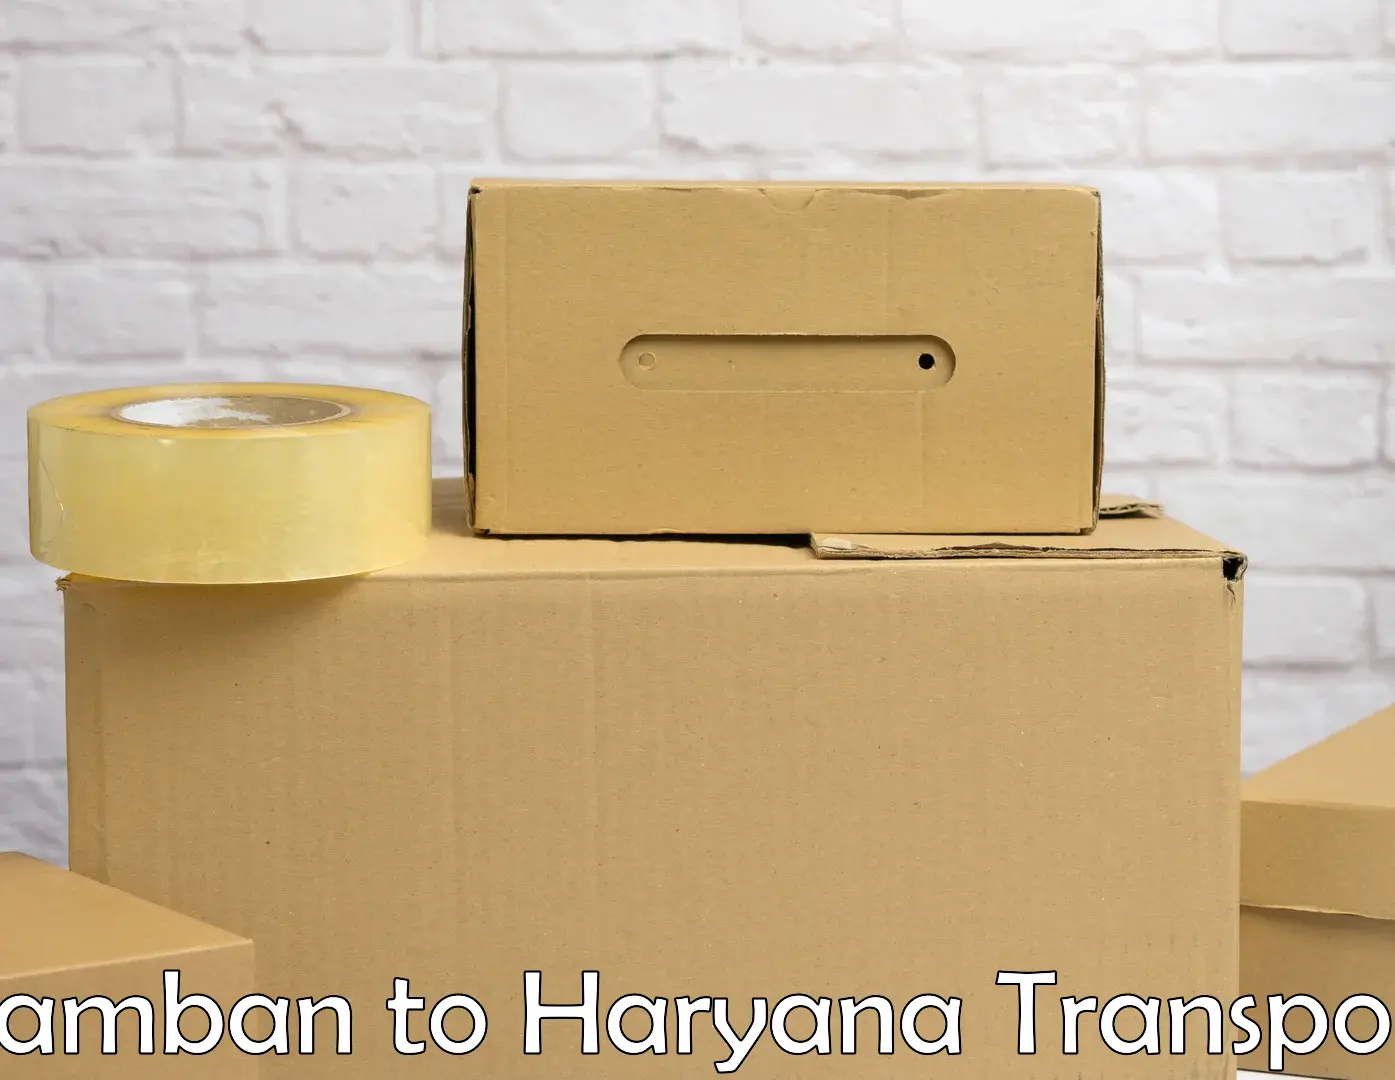 Two wheeler parcel service Ramban to NCR Haryana